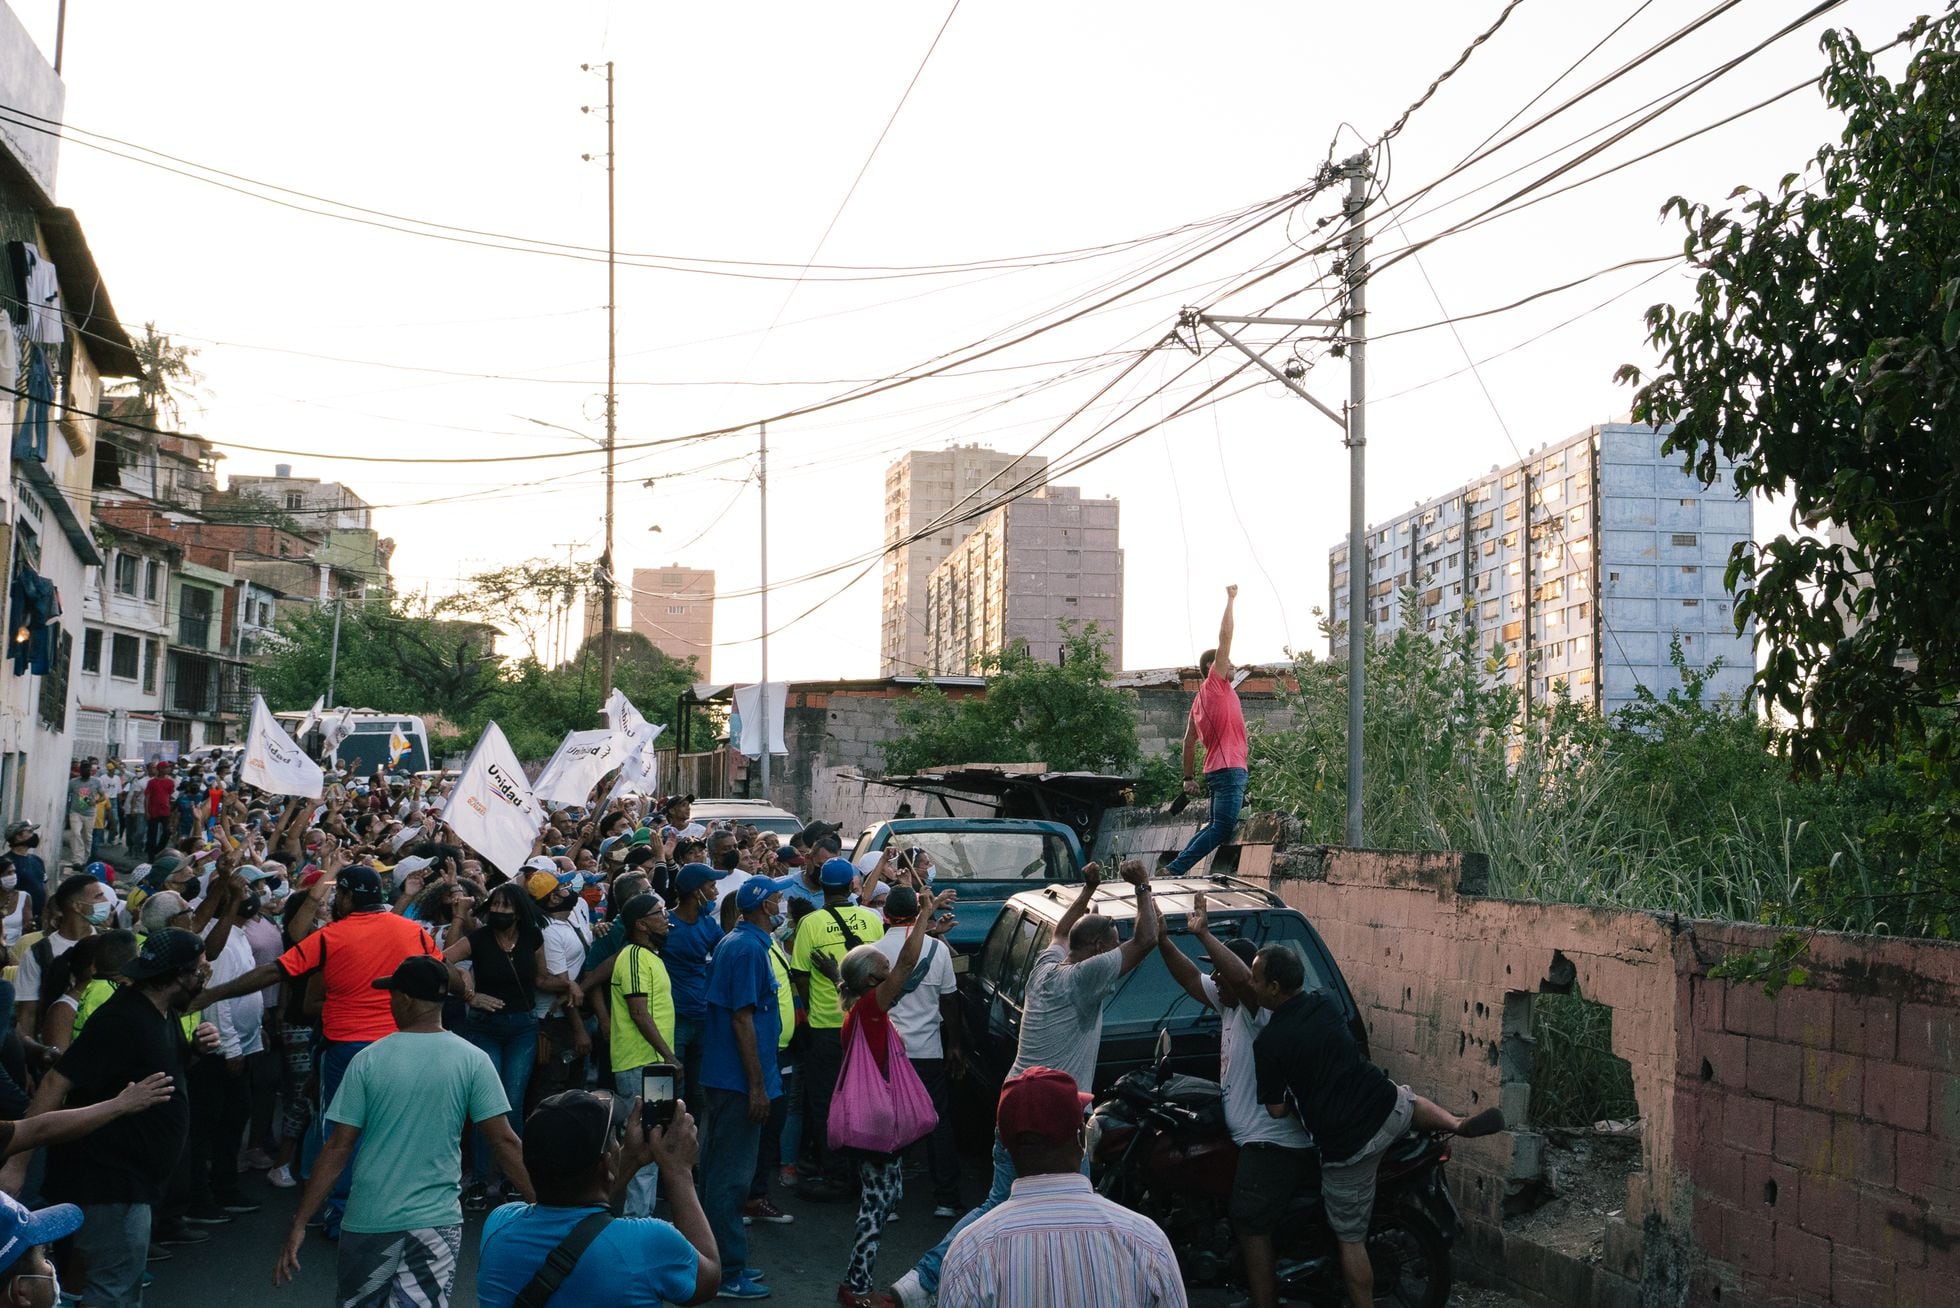 El candidato por la Mesa de la Unidad, JosŽ Manuel Olivares, saluda a los vecinos en los edificios durante un recorrido organizado para su campa–a en La Guaira, Venezuela, el 14 de noviembre de 2021.